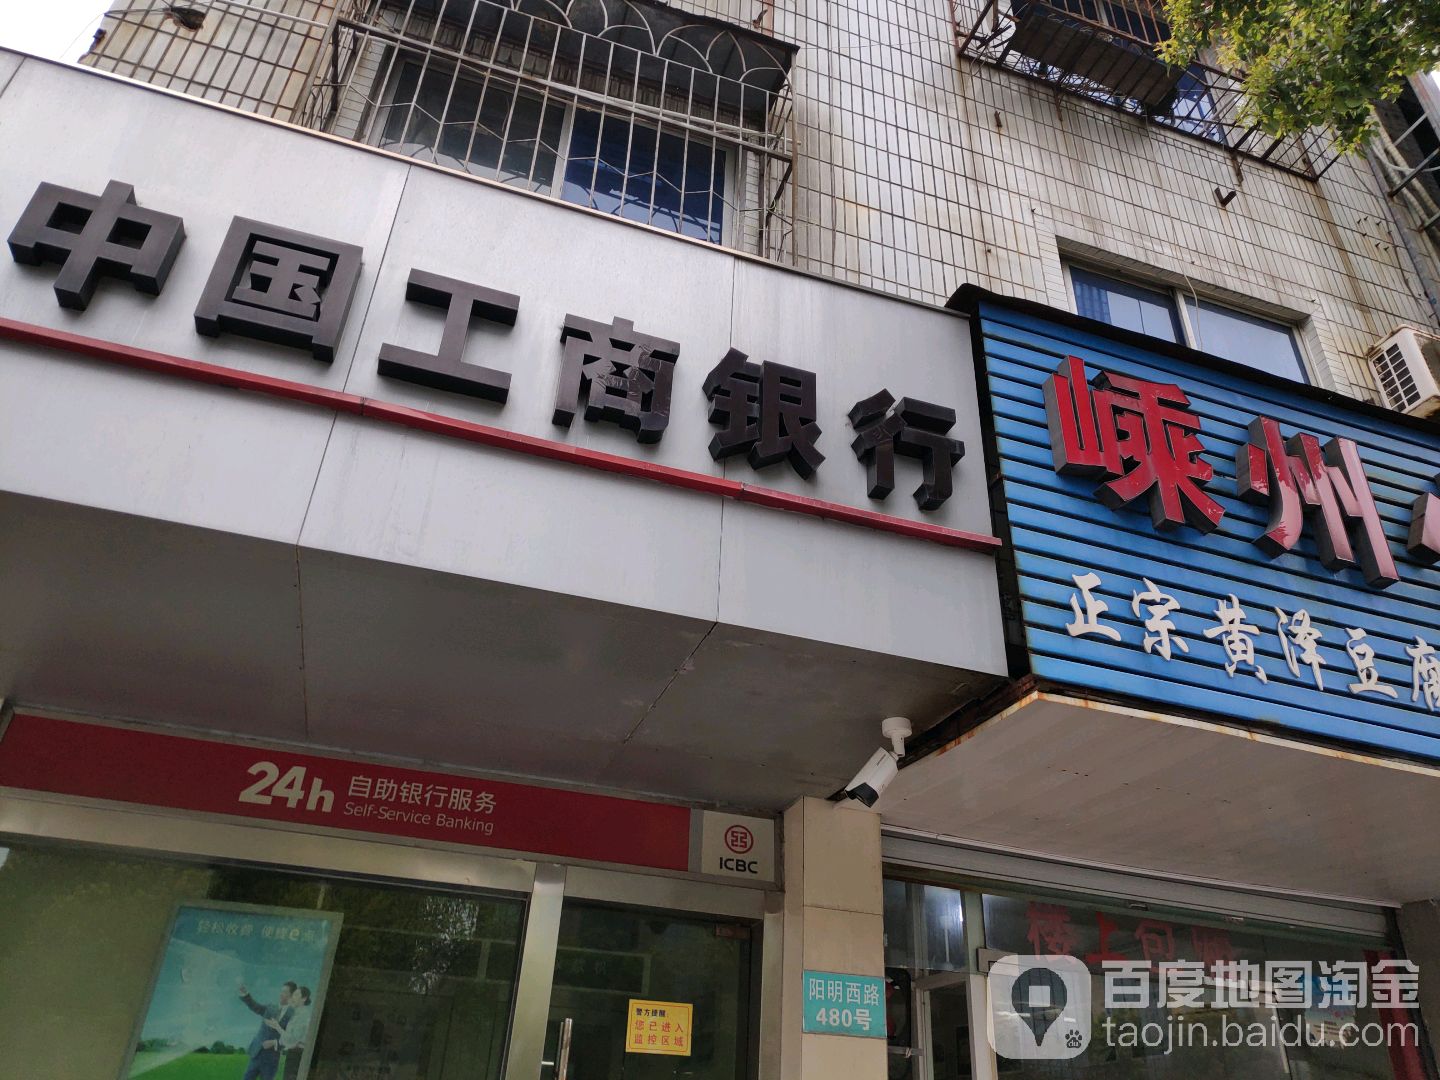 中國工商銀行24小時自助銀行(陽明西路店)